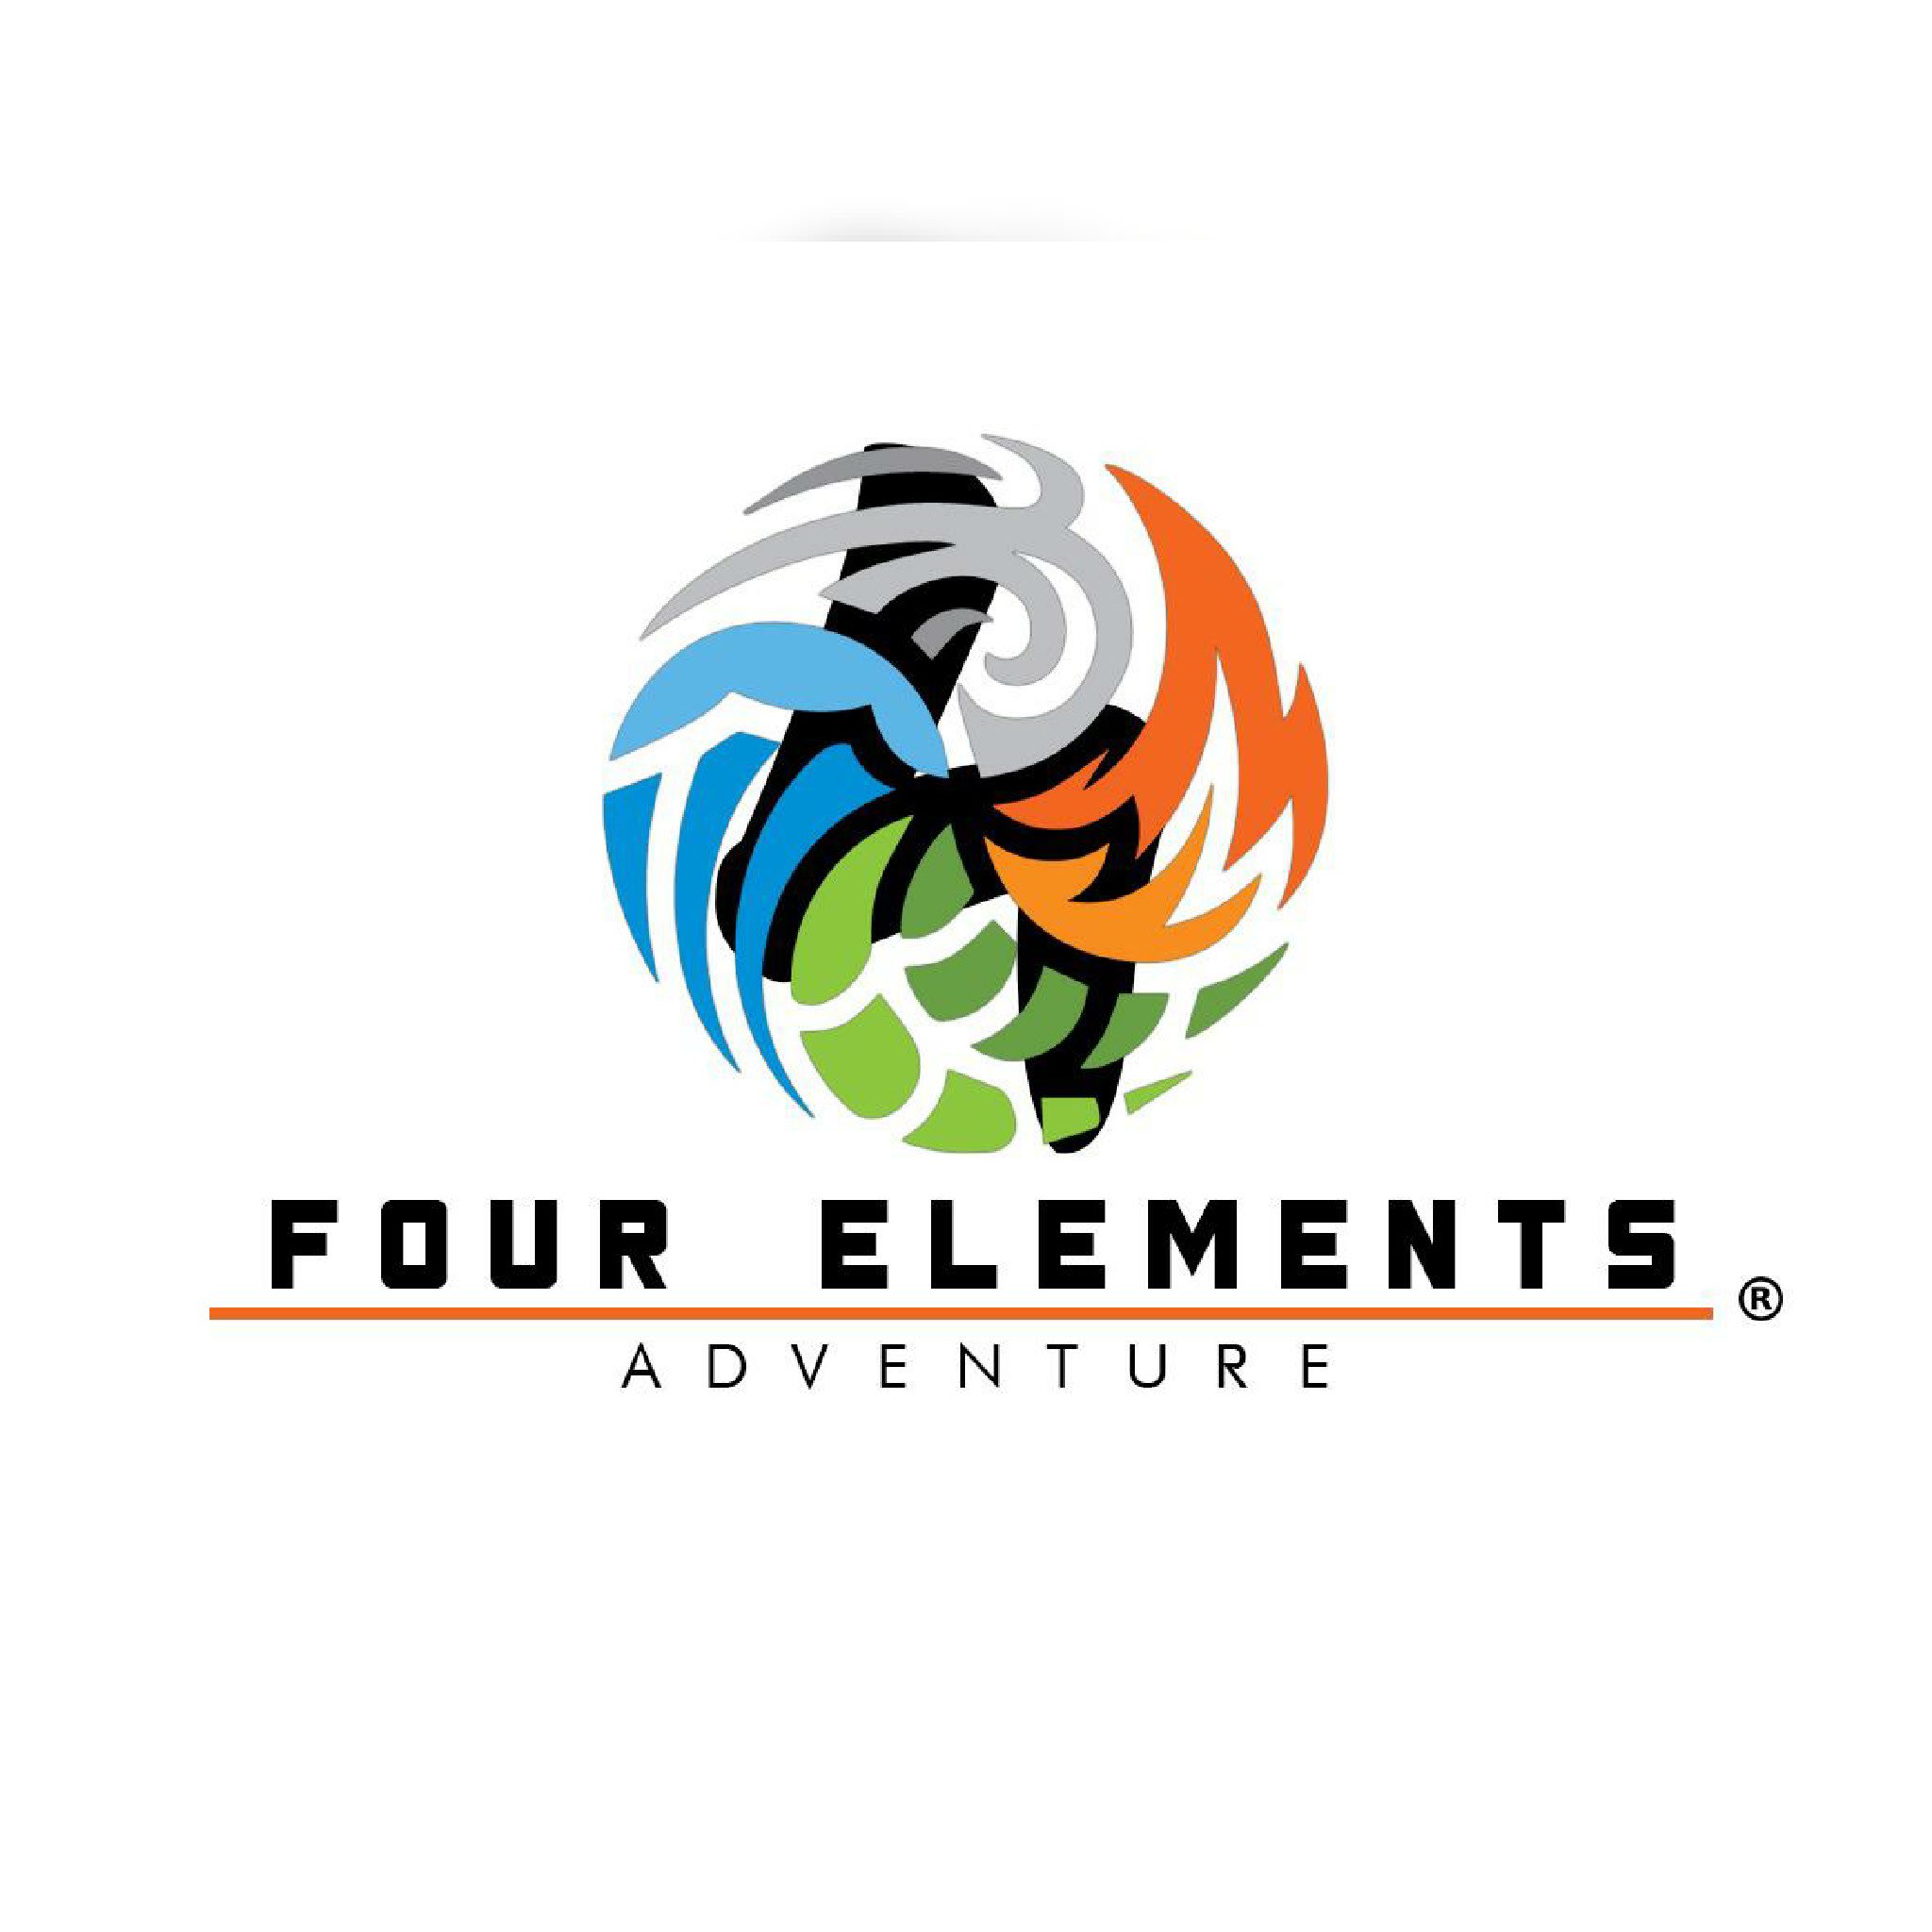 Four Elements Adventure